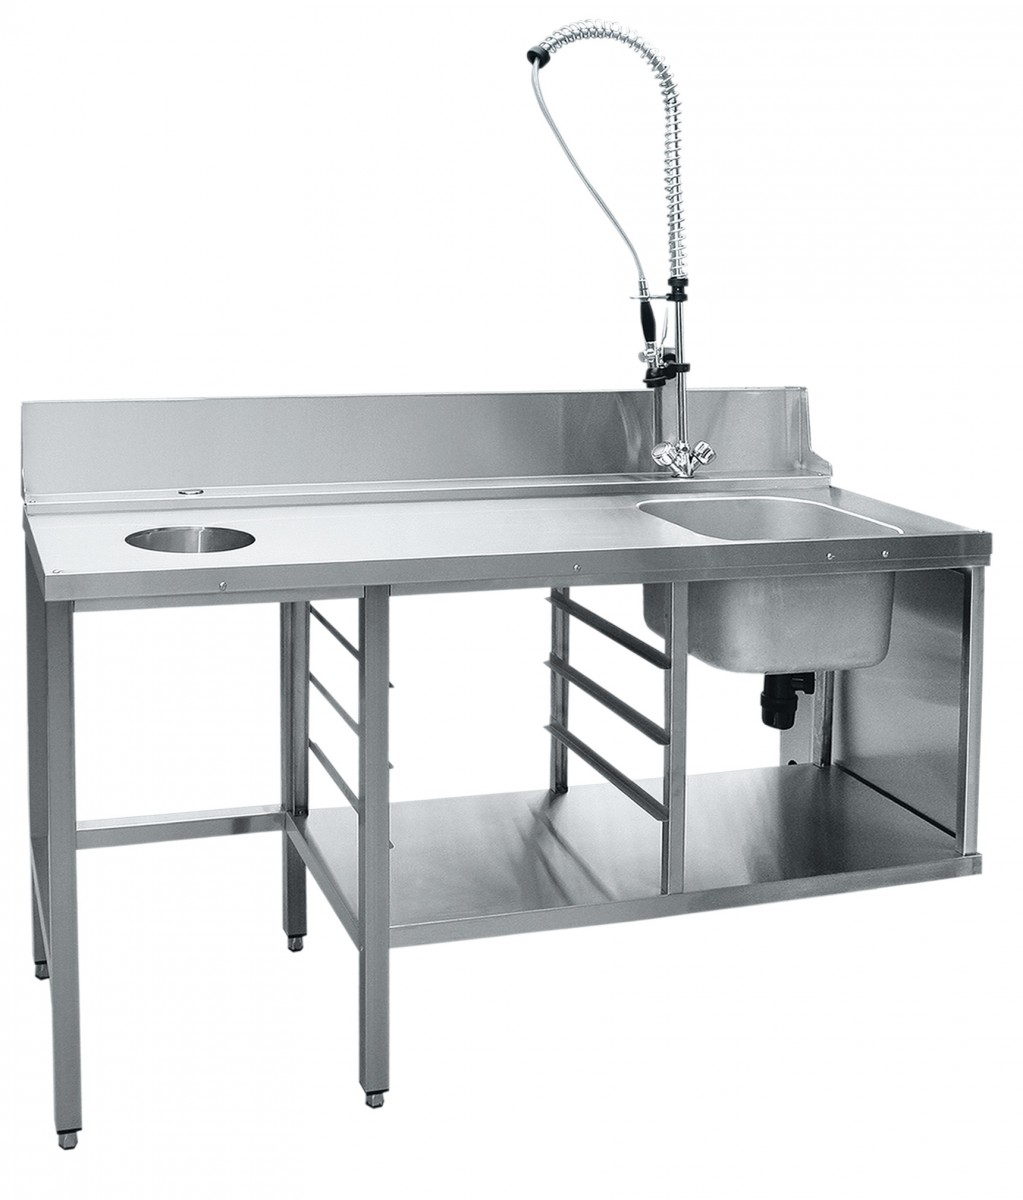 Стол предмоечный СПМП-6-7 для купольных посудомоечных машин